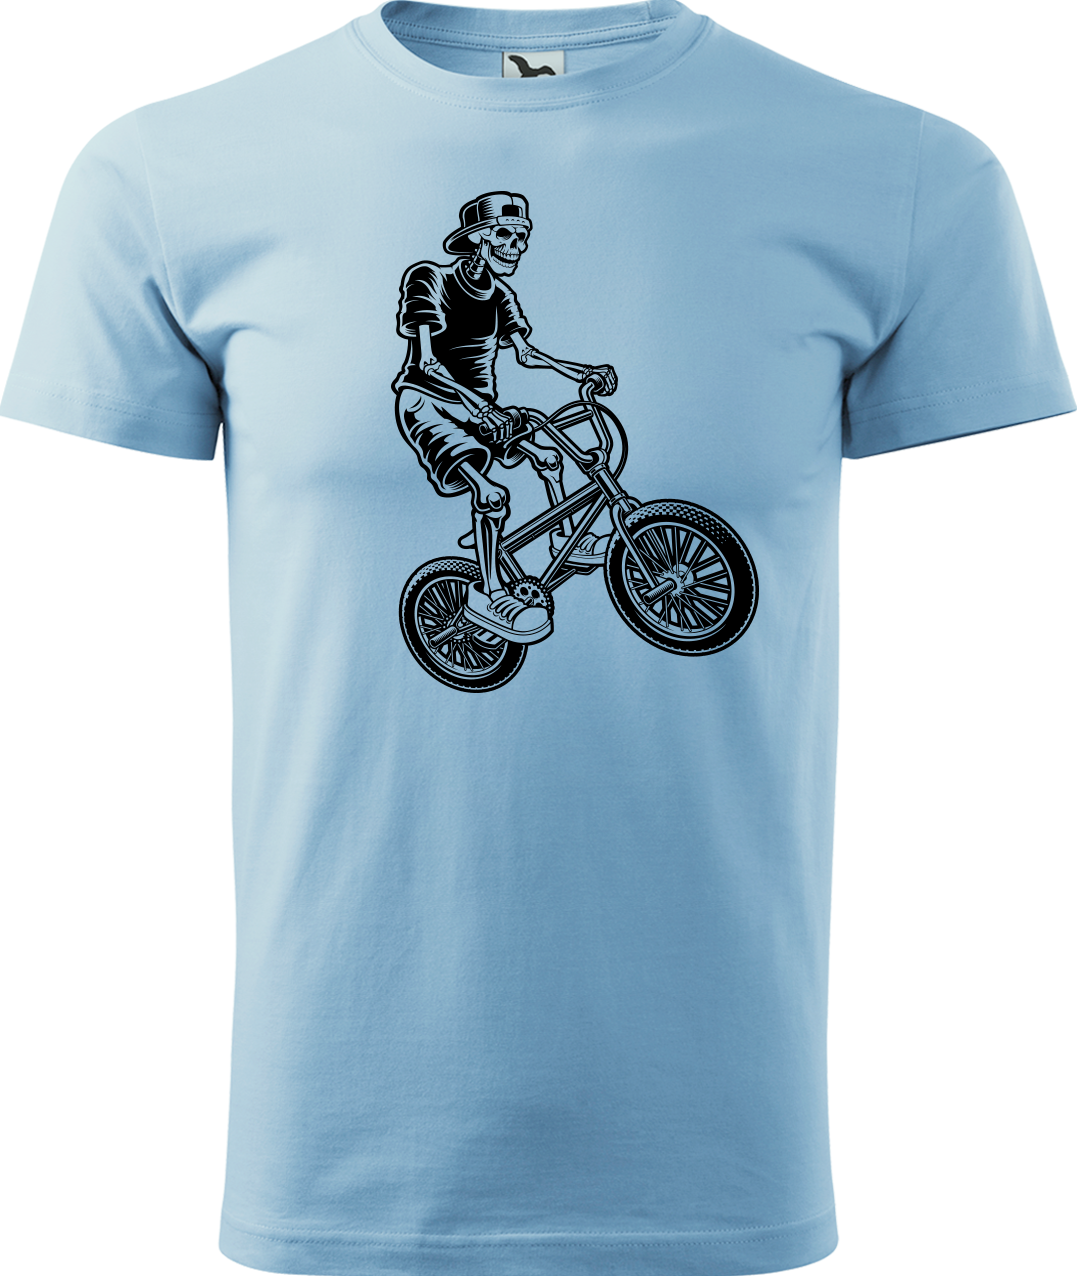 Pánské tričko s kolem - Trial Bike Velikost: M, Barva: Nebesky modrá (15)